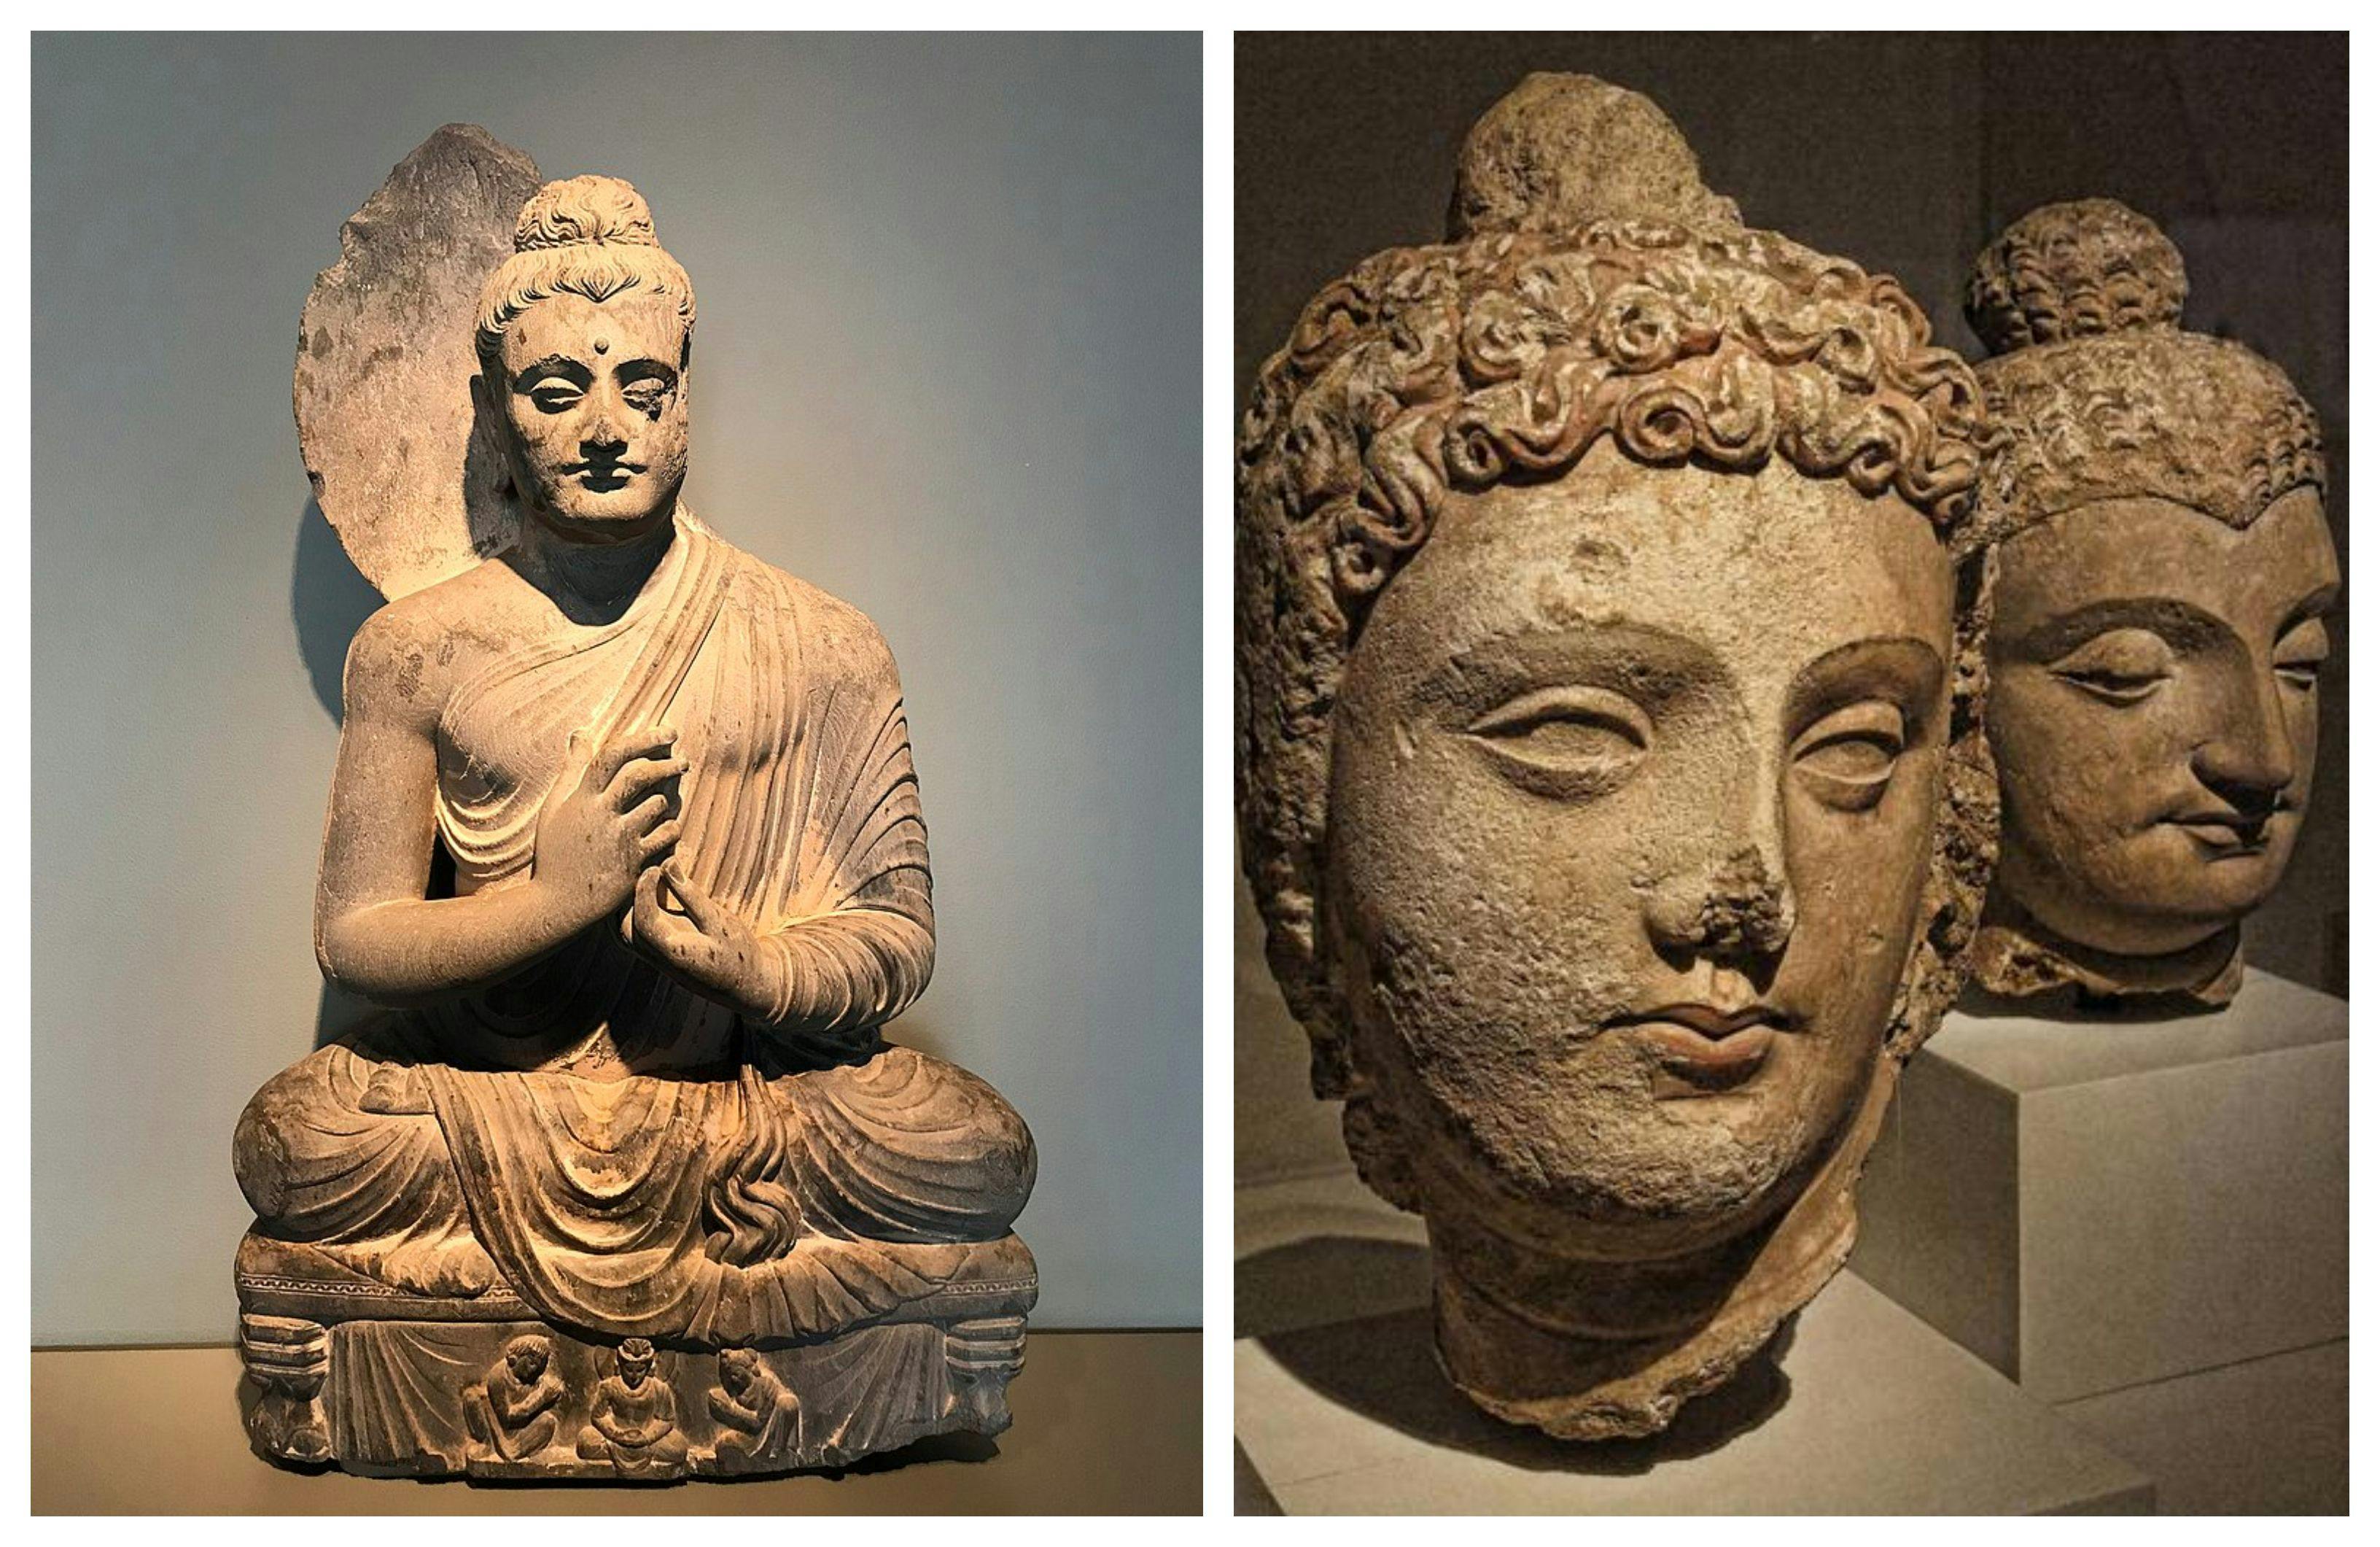 Kushana images of Buddha